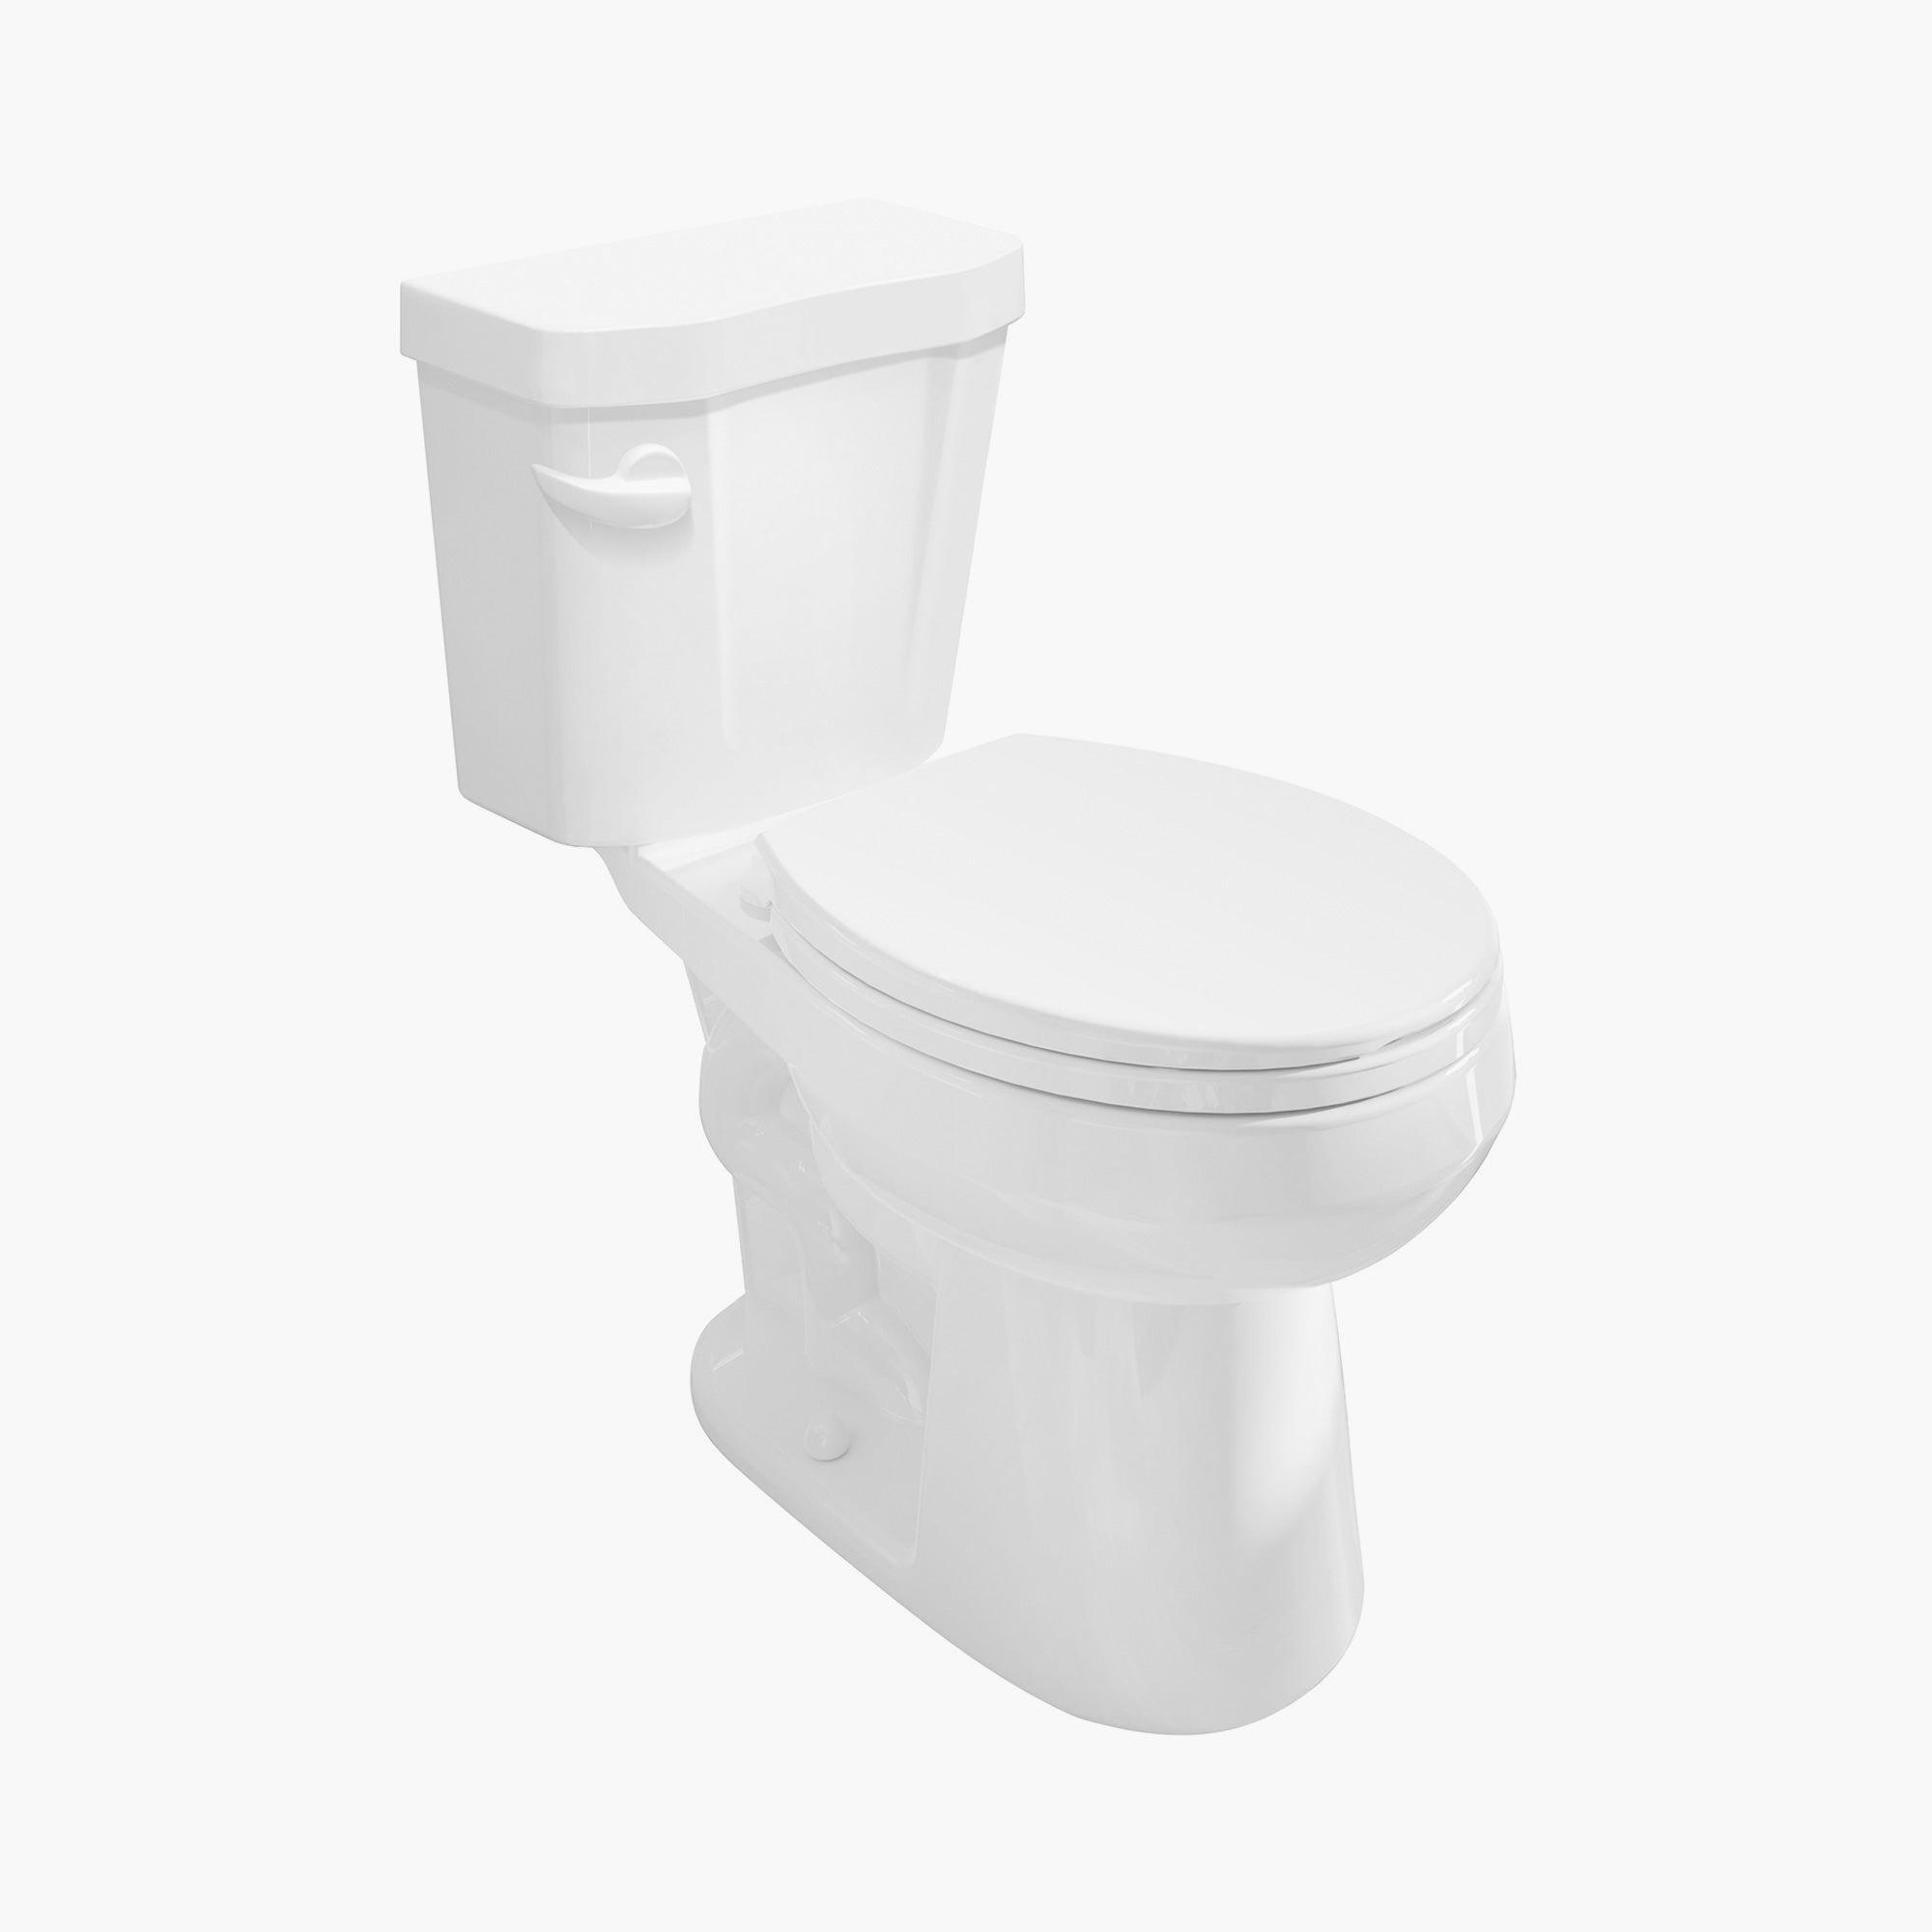 HOROW Best 2 Piece Toilet Round Skirted Toilet Model HWTT-R01S